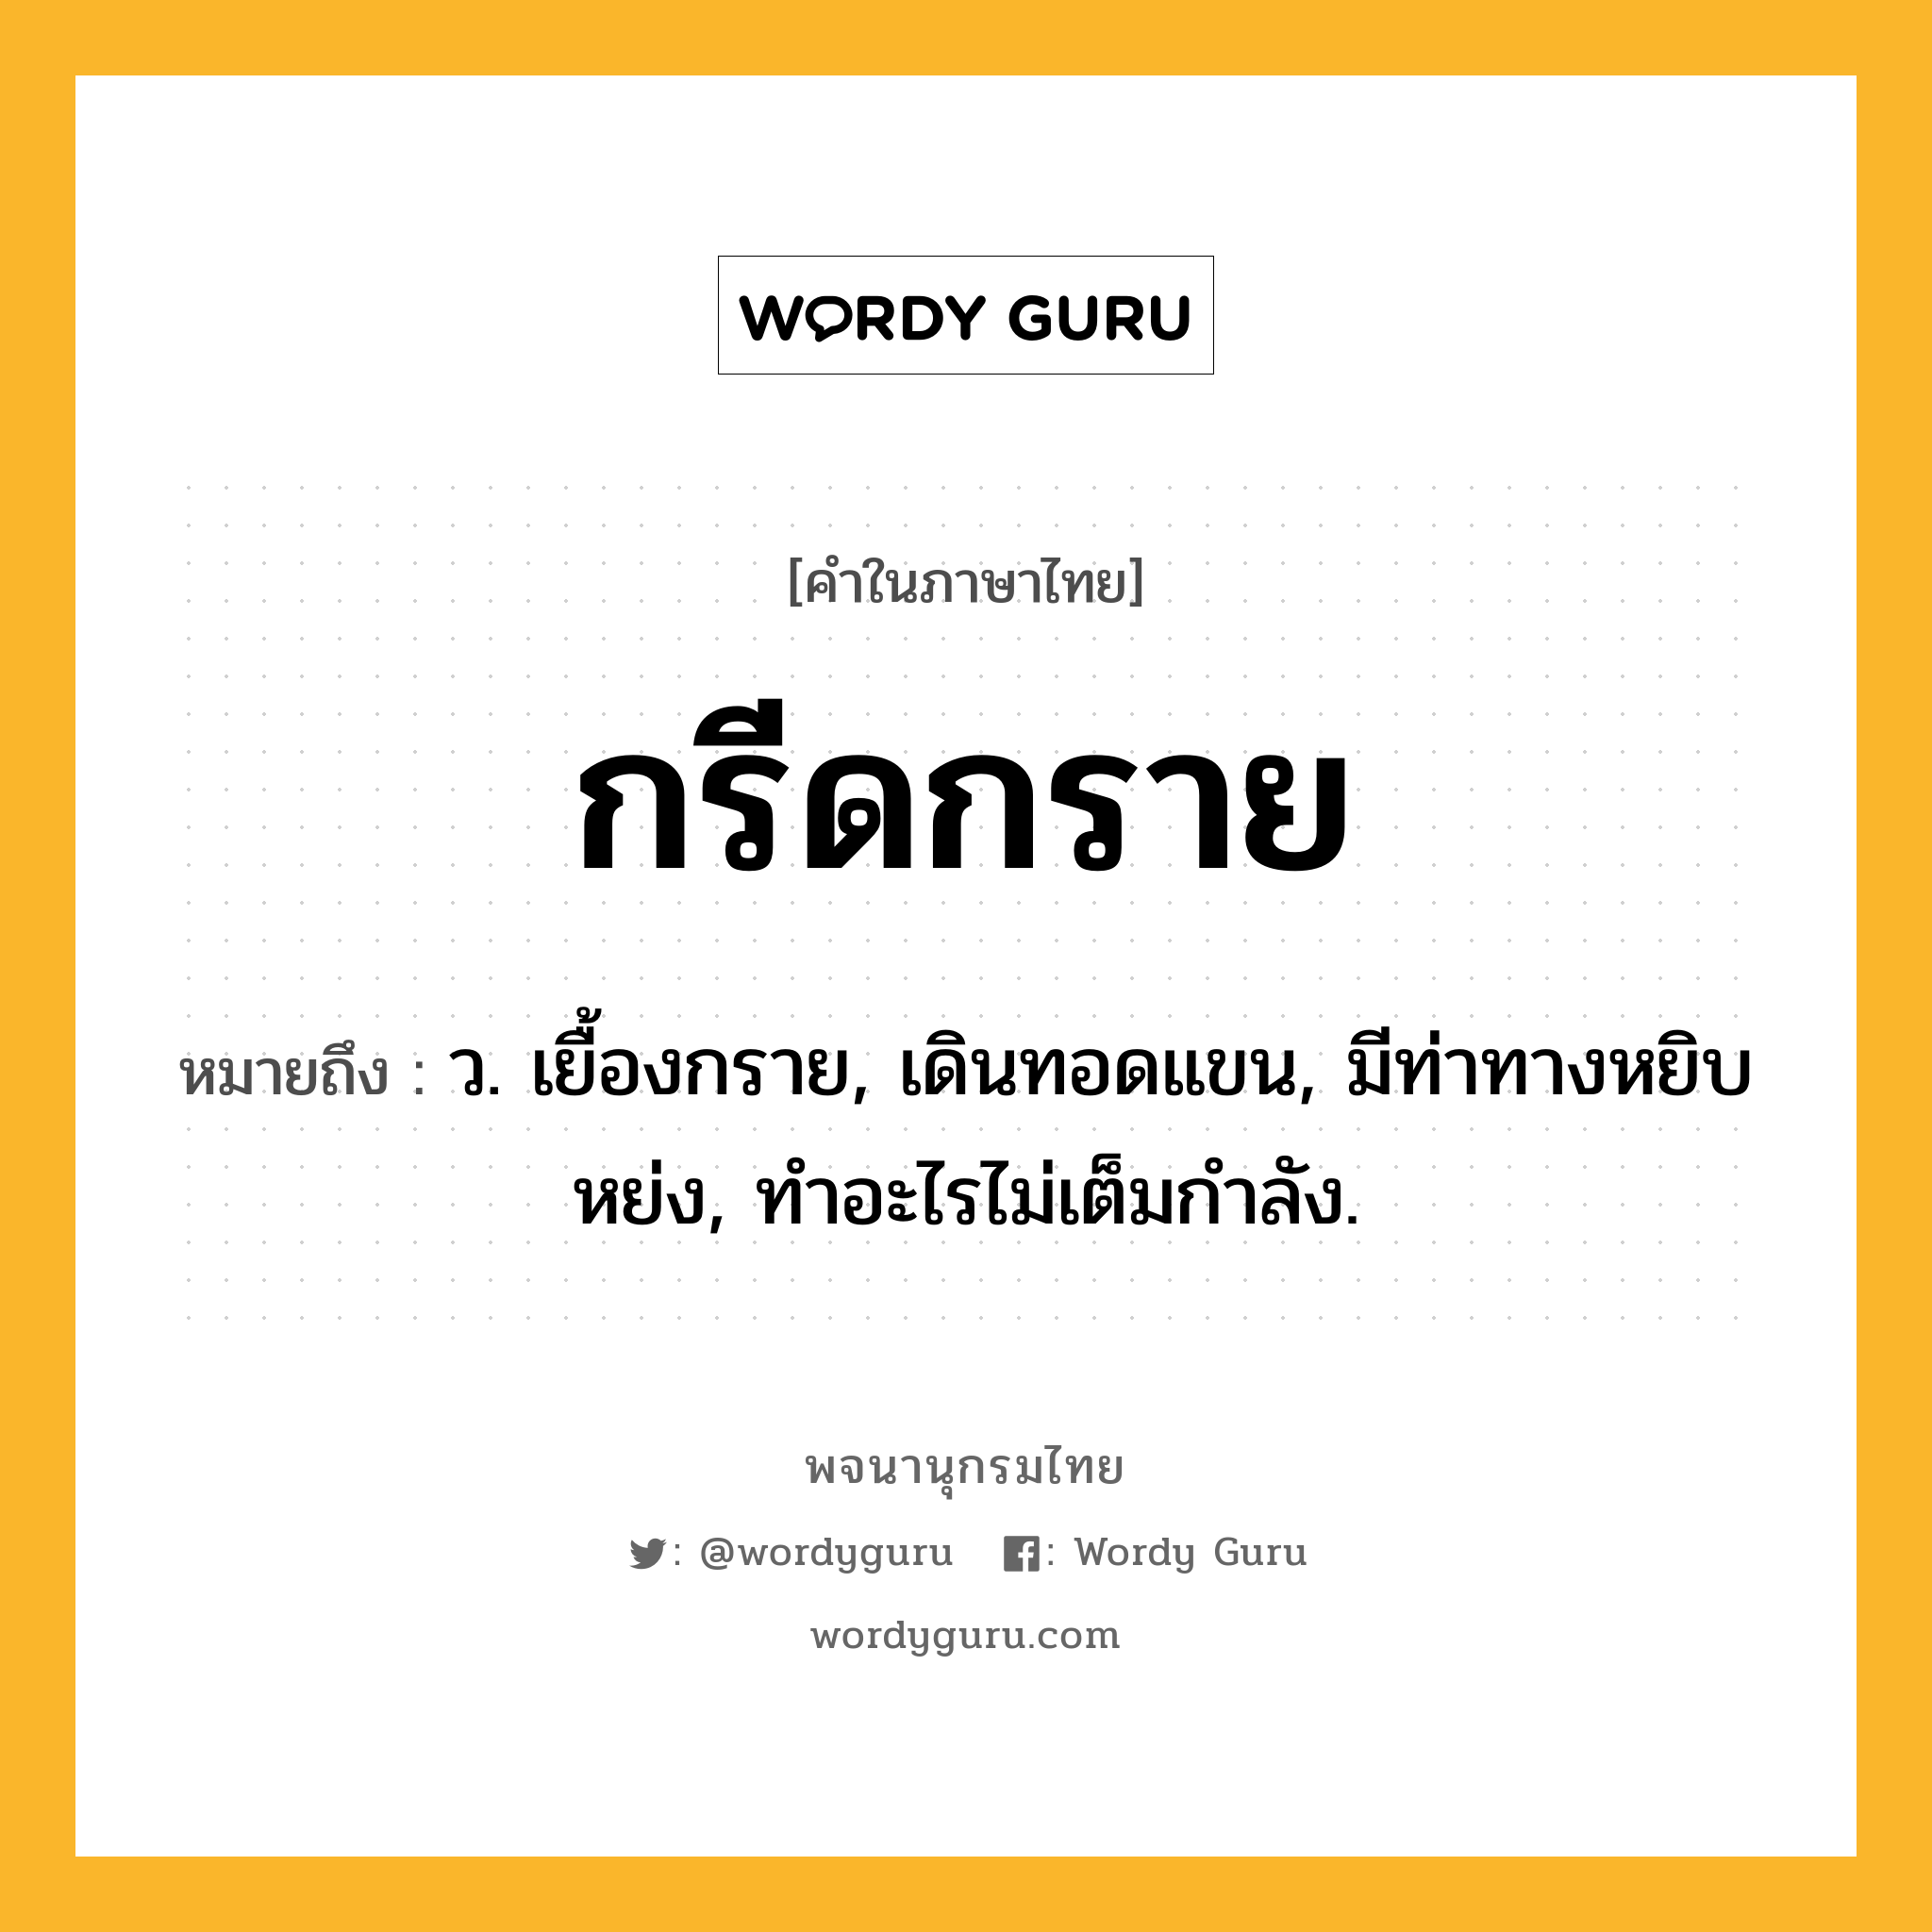 กรีดกราย หมายถึงอะไร?, คำในภาษาไทย กรีดกราย หมายถึง ว. เยื้องกราย, เดินทอดแขน, มีท่าทางหยิบหย่ง, ทำอะไรไม่เต็มกำลัง.